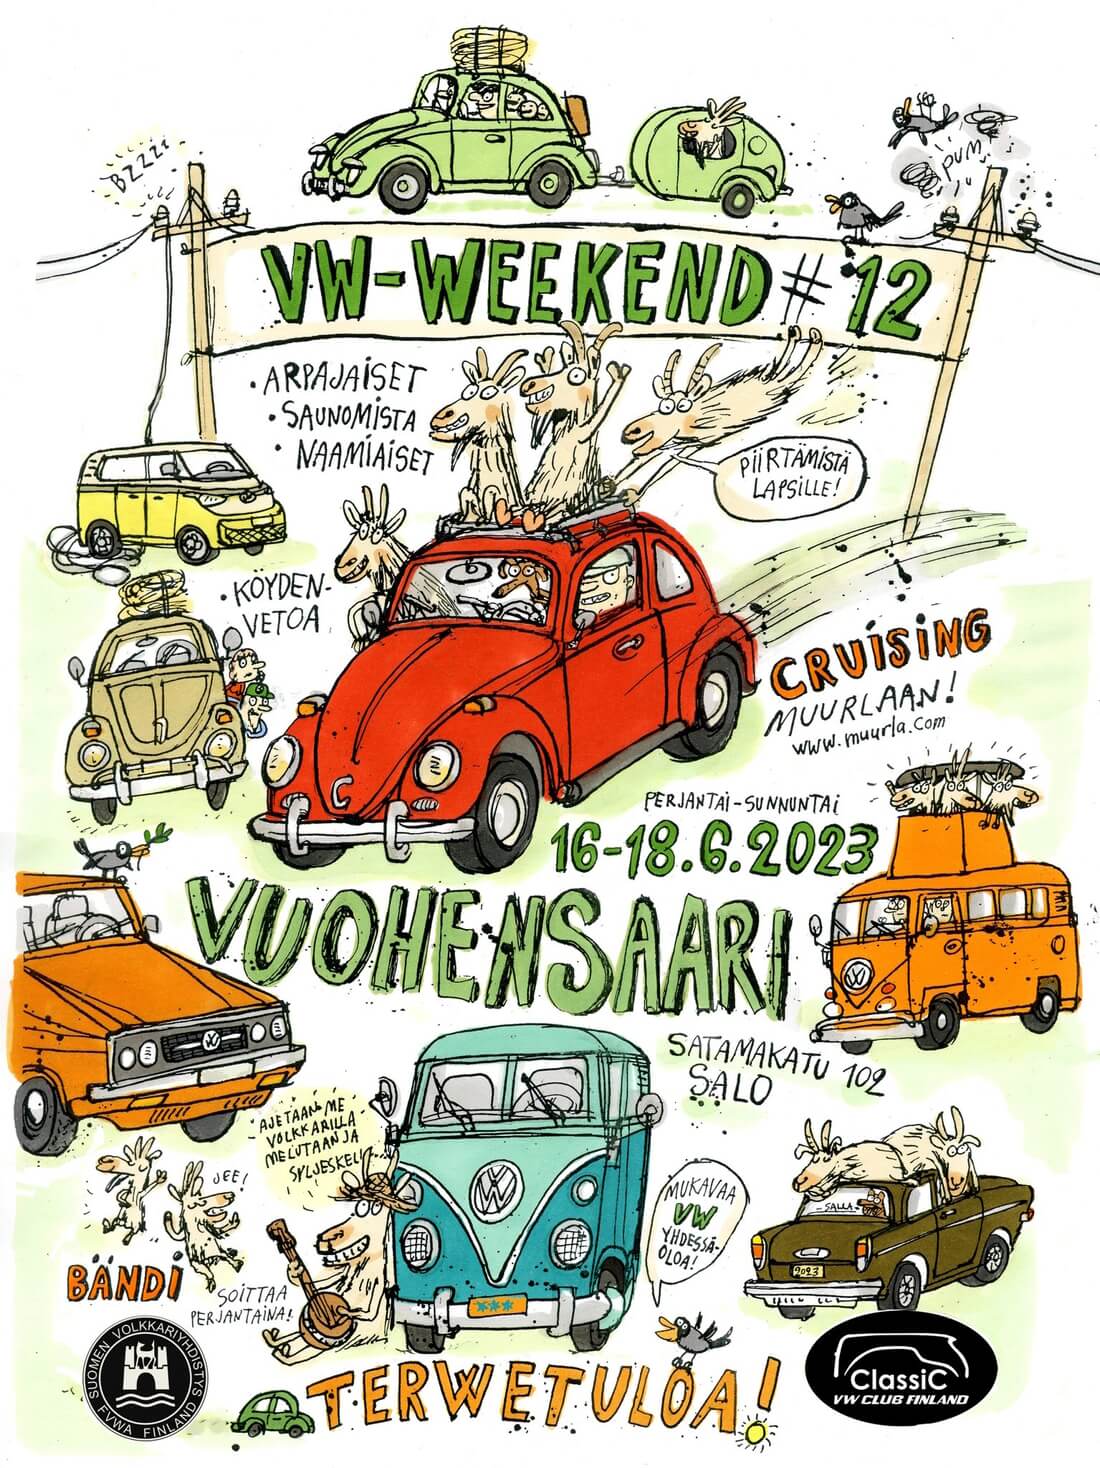 VW-Weekend 12 Vuohensaari Salo